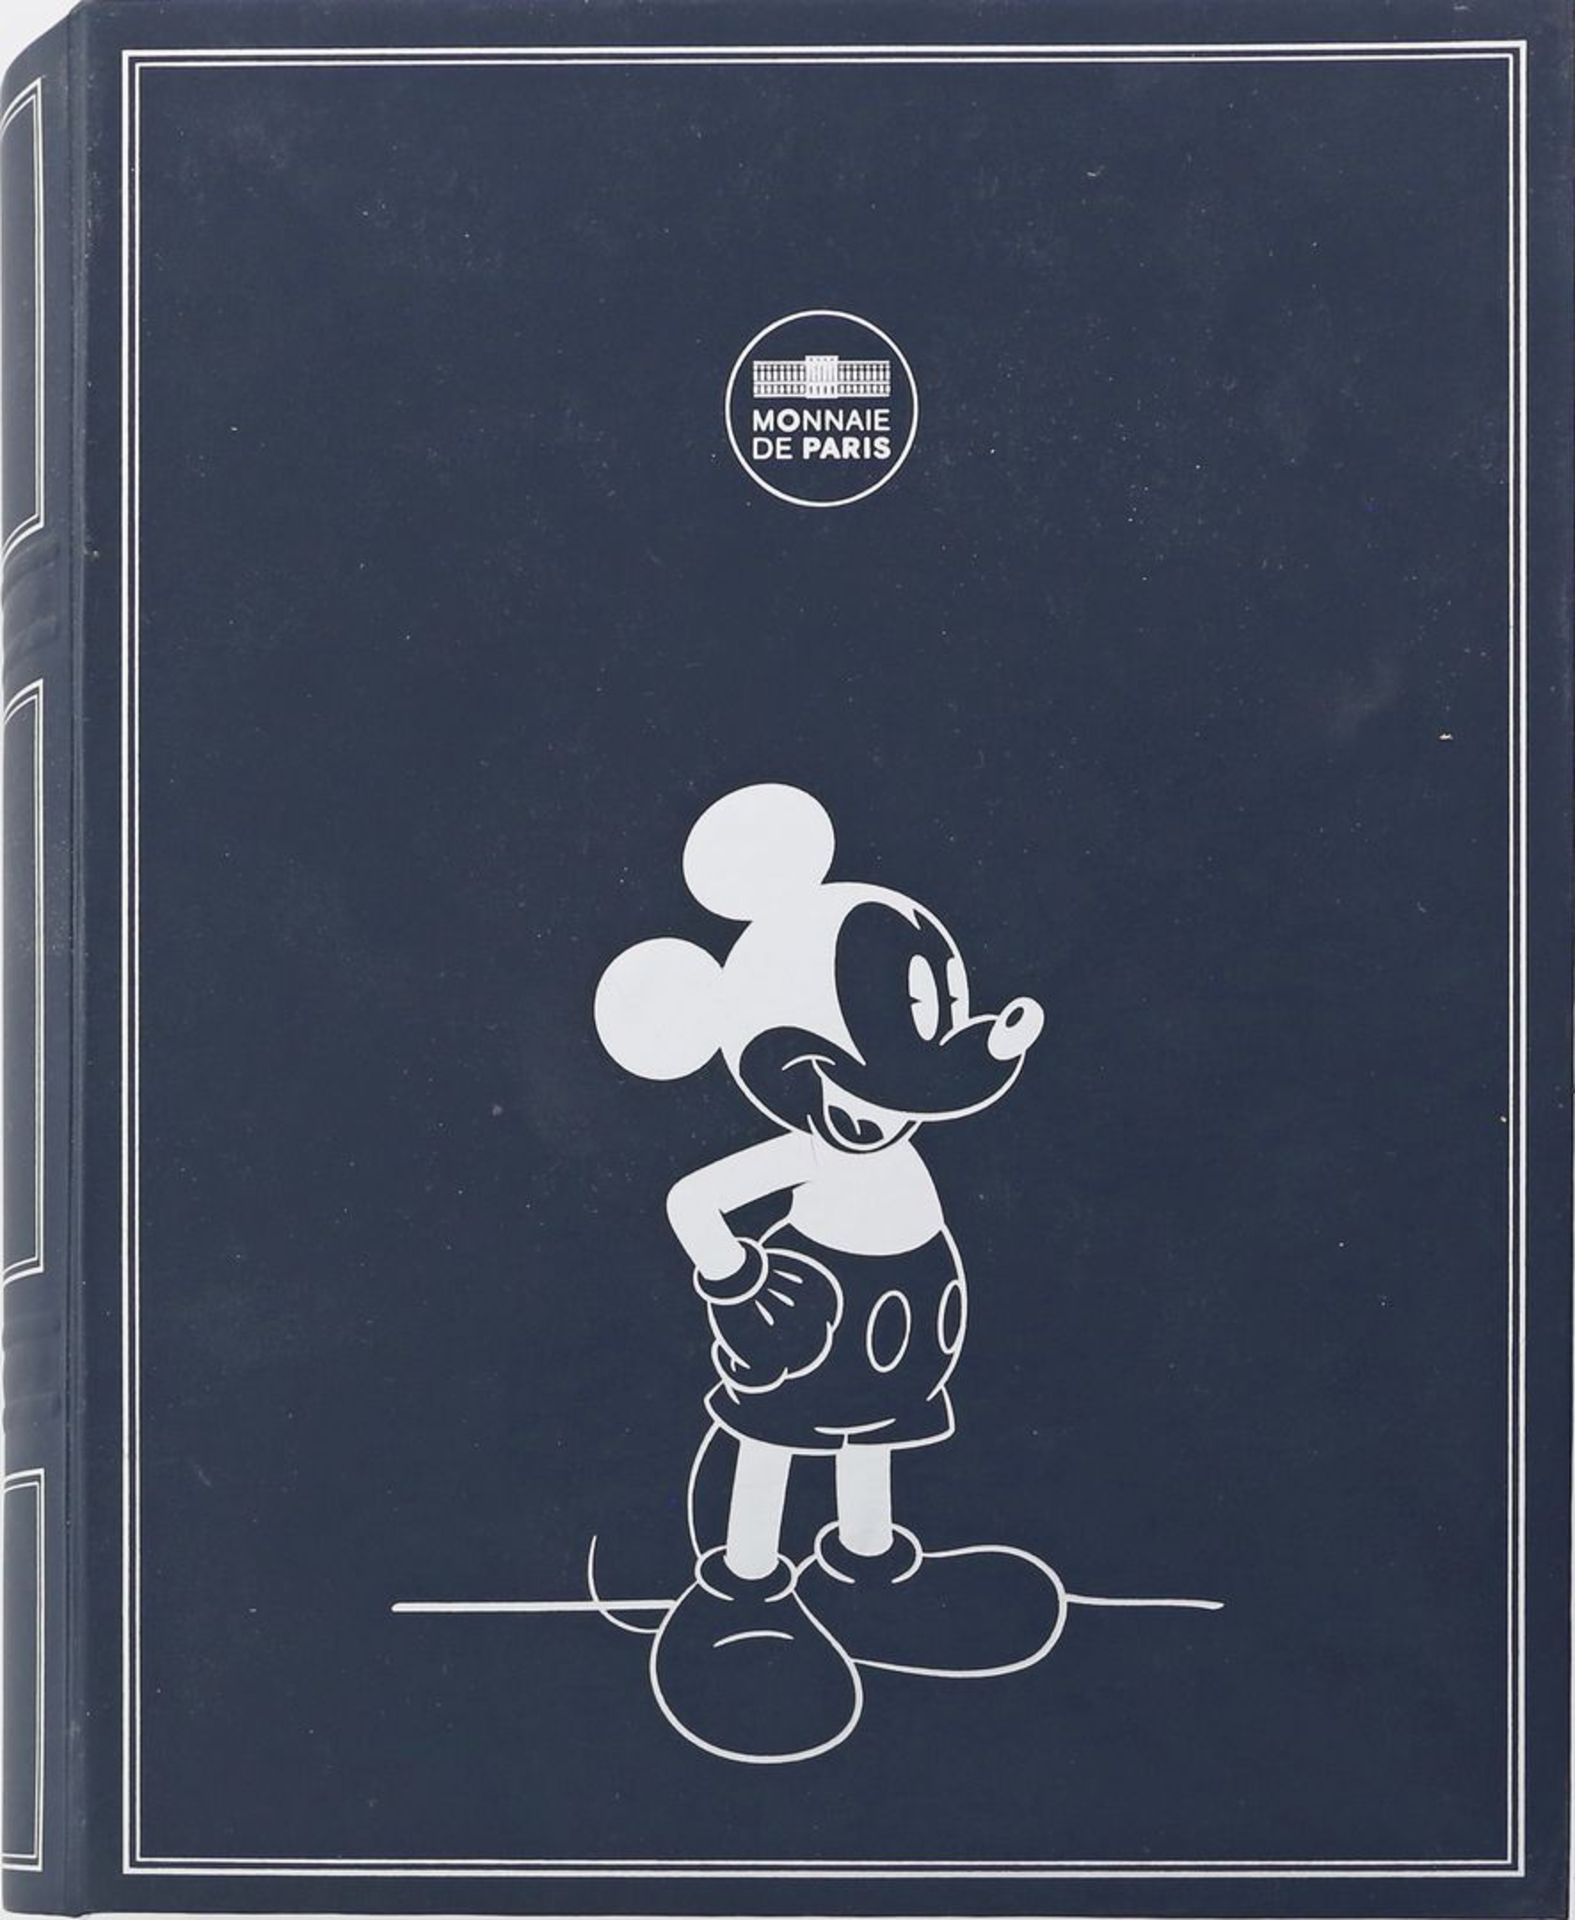 Sammlung von 20 10-Euro-Gedenkmünzen "Mickey Mouse", Frankreich 2018. - Image 2 of 2